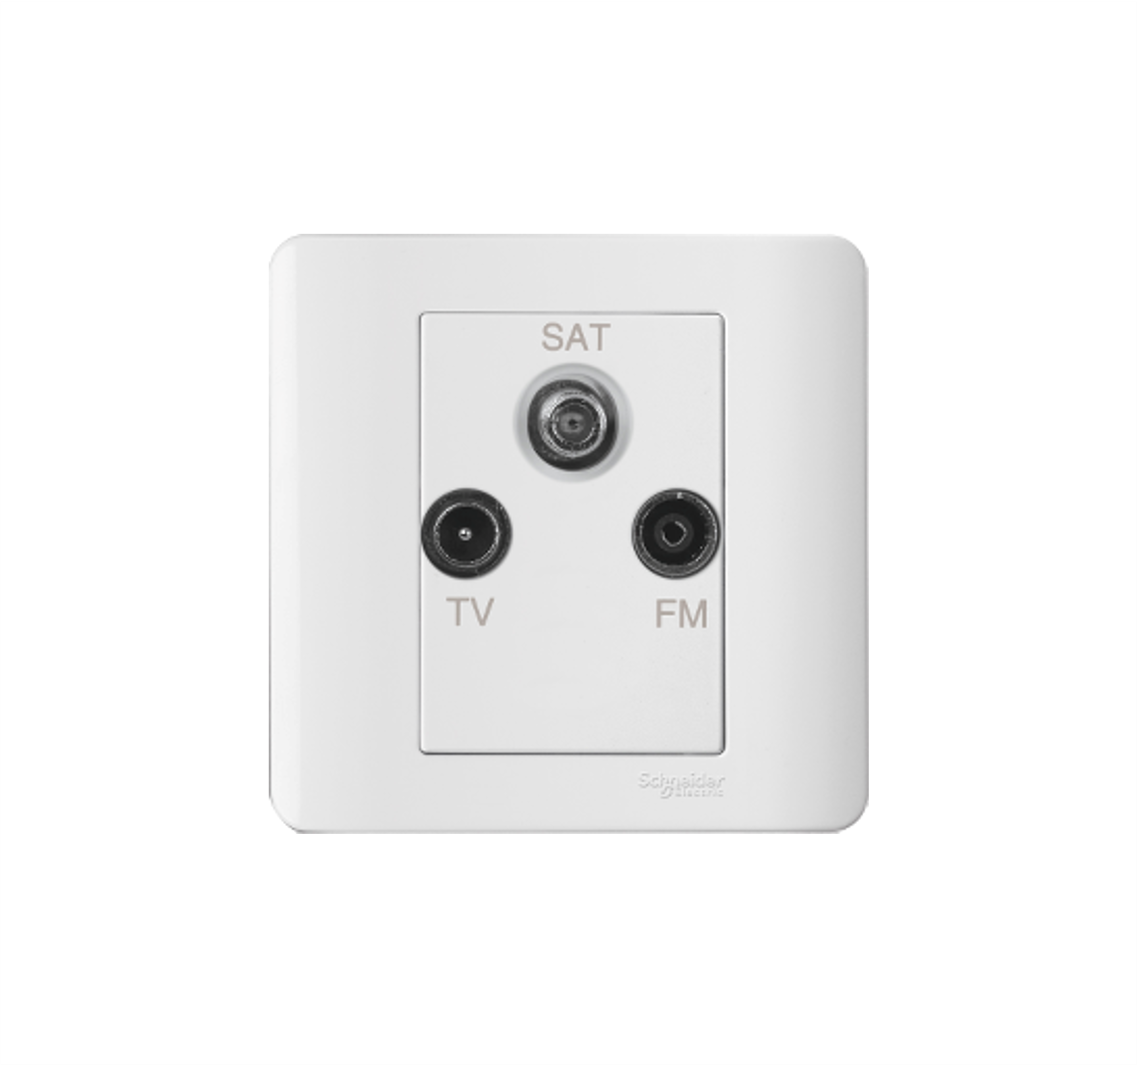 ZENCELO - TV/FM/SAT Socket Outlet (White)